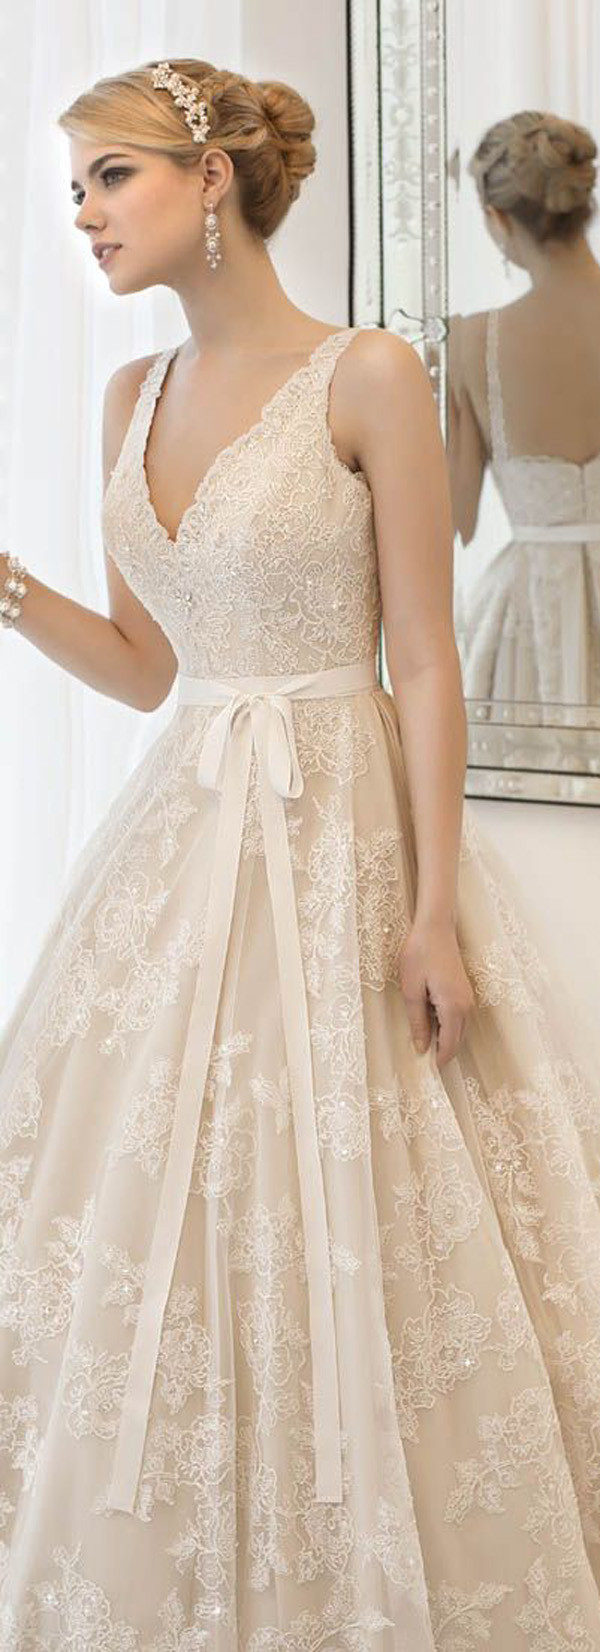 Lace Vintage Wedding Dress
 Top 20 Vintage Wedding Dresses For 2016 Brides